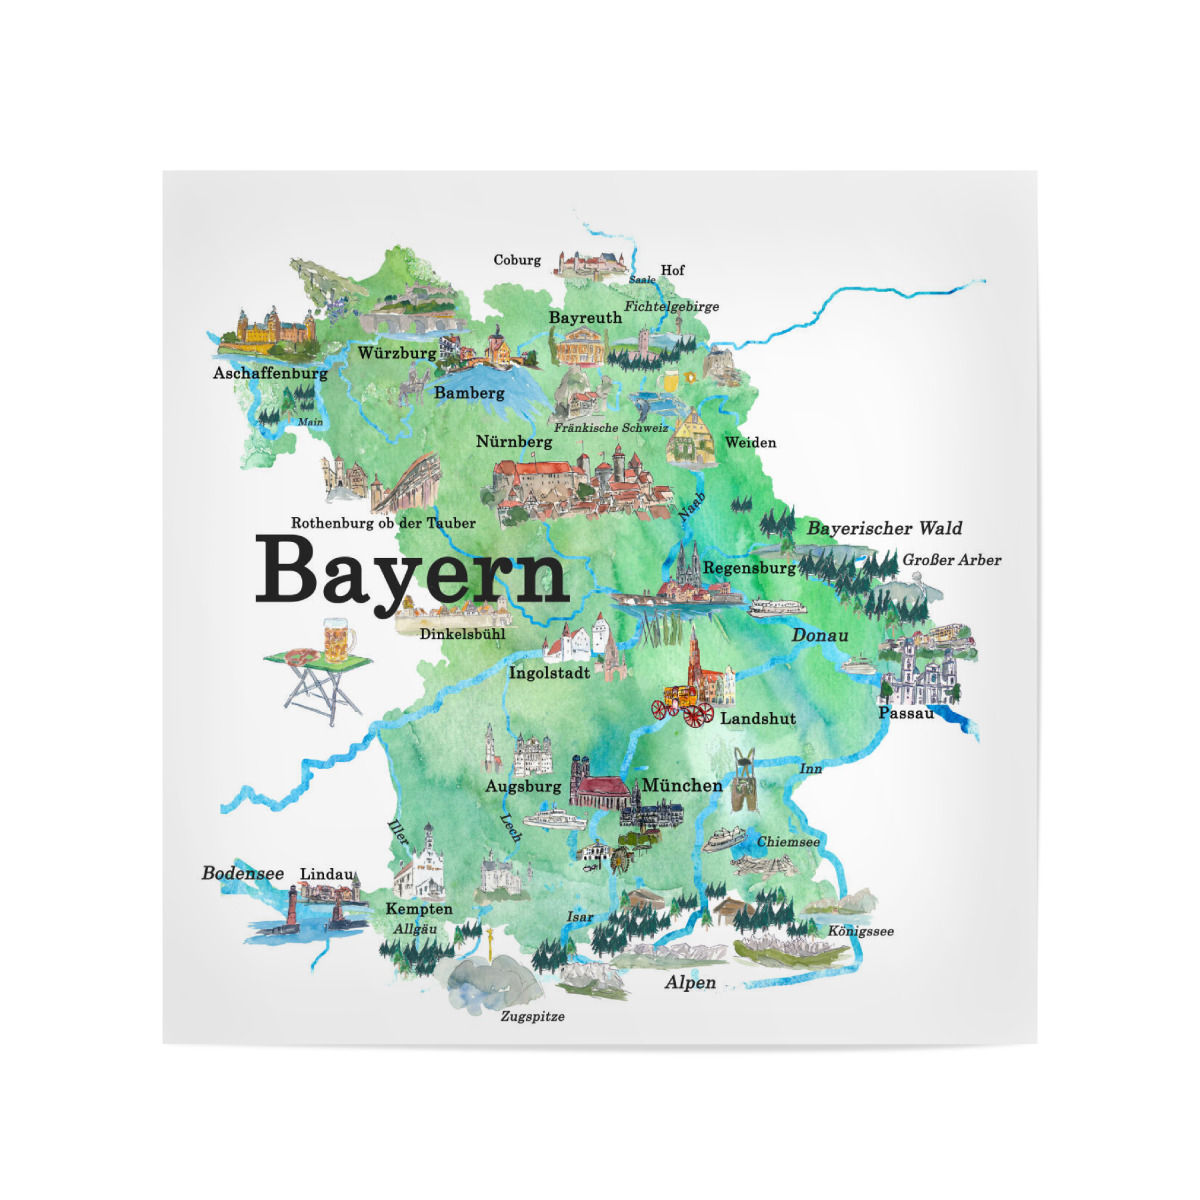 Bayern Karte : "Bayern Karte" Stockfotos und lizenzfreie Vektoren auf